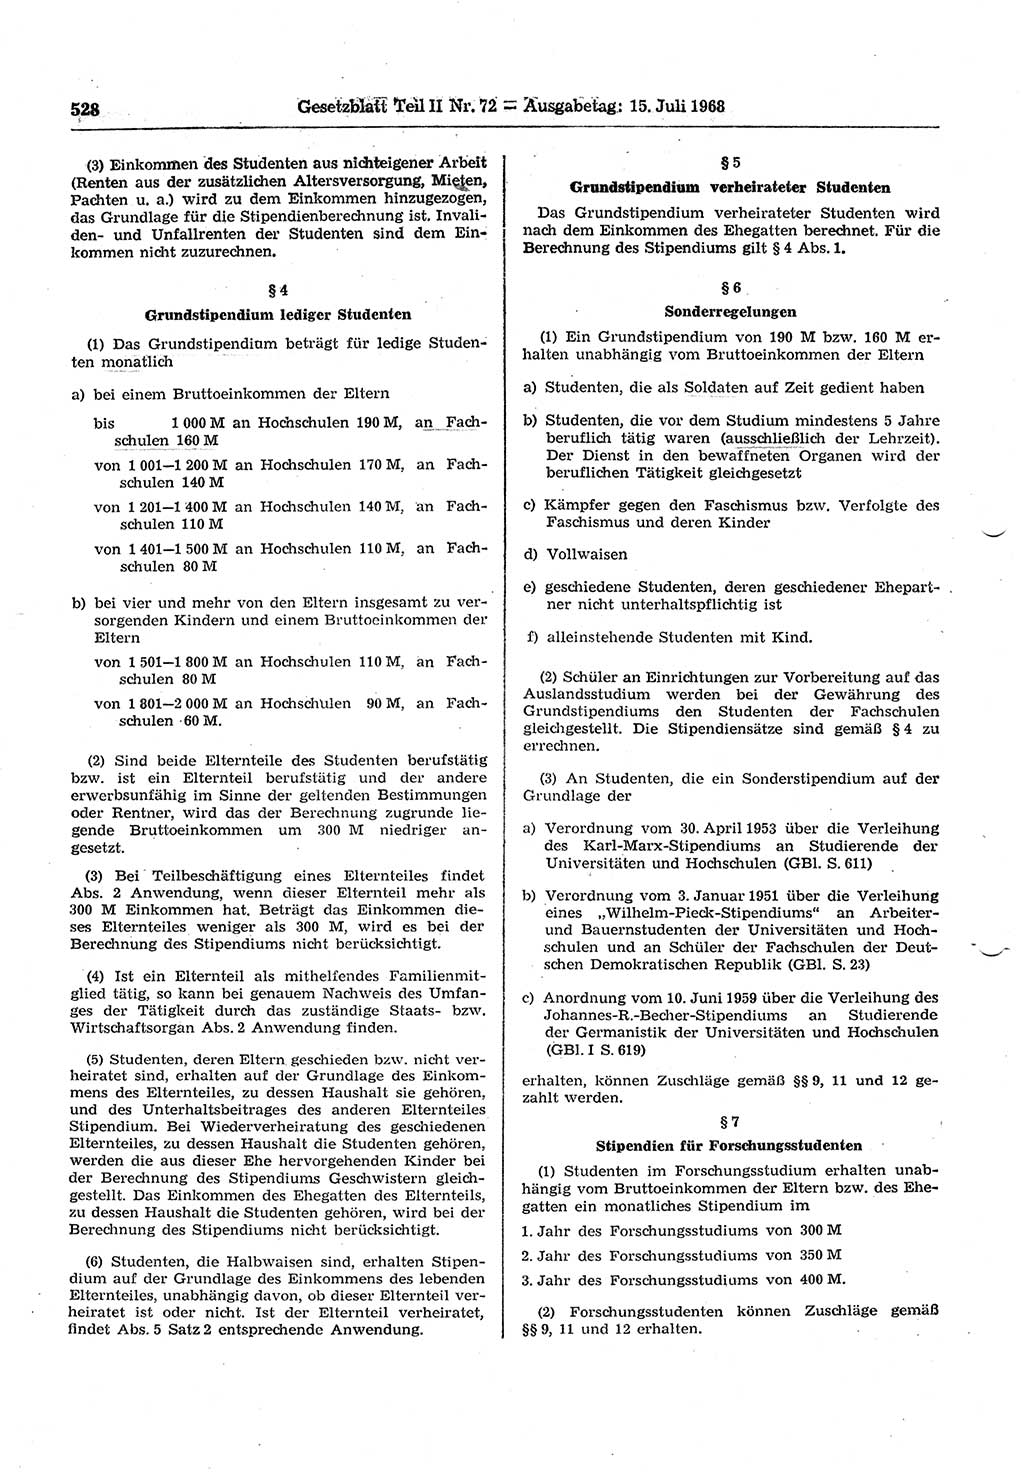 Gesetzblatt (GBl.) der Deutschen Demokratischen Republik (DDR) Teil ⅠⅠ 1968, Seite 528 (GBl. DDR ⅠⅠ 1968, S. 528)